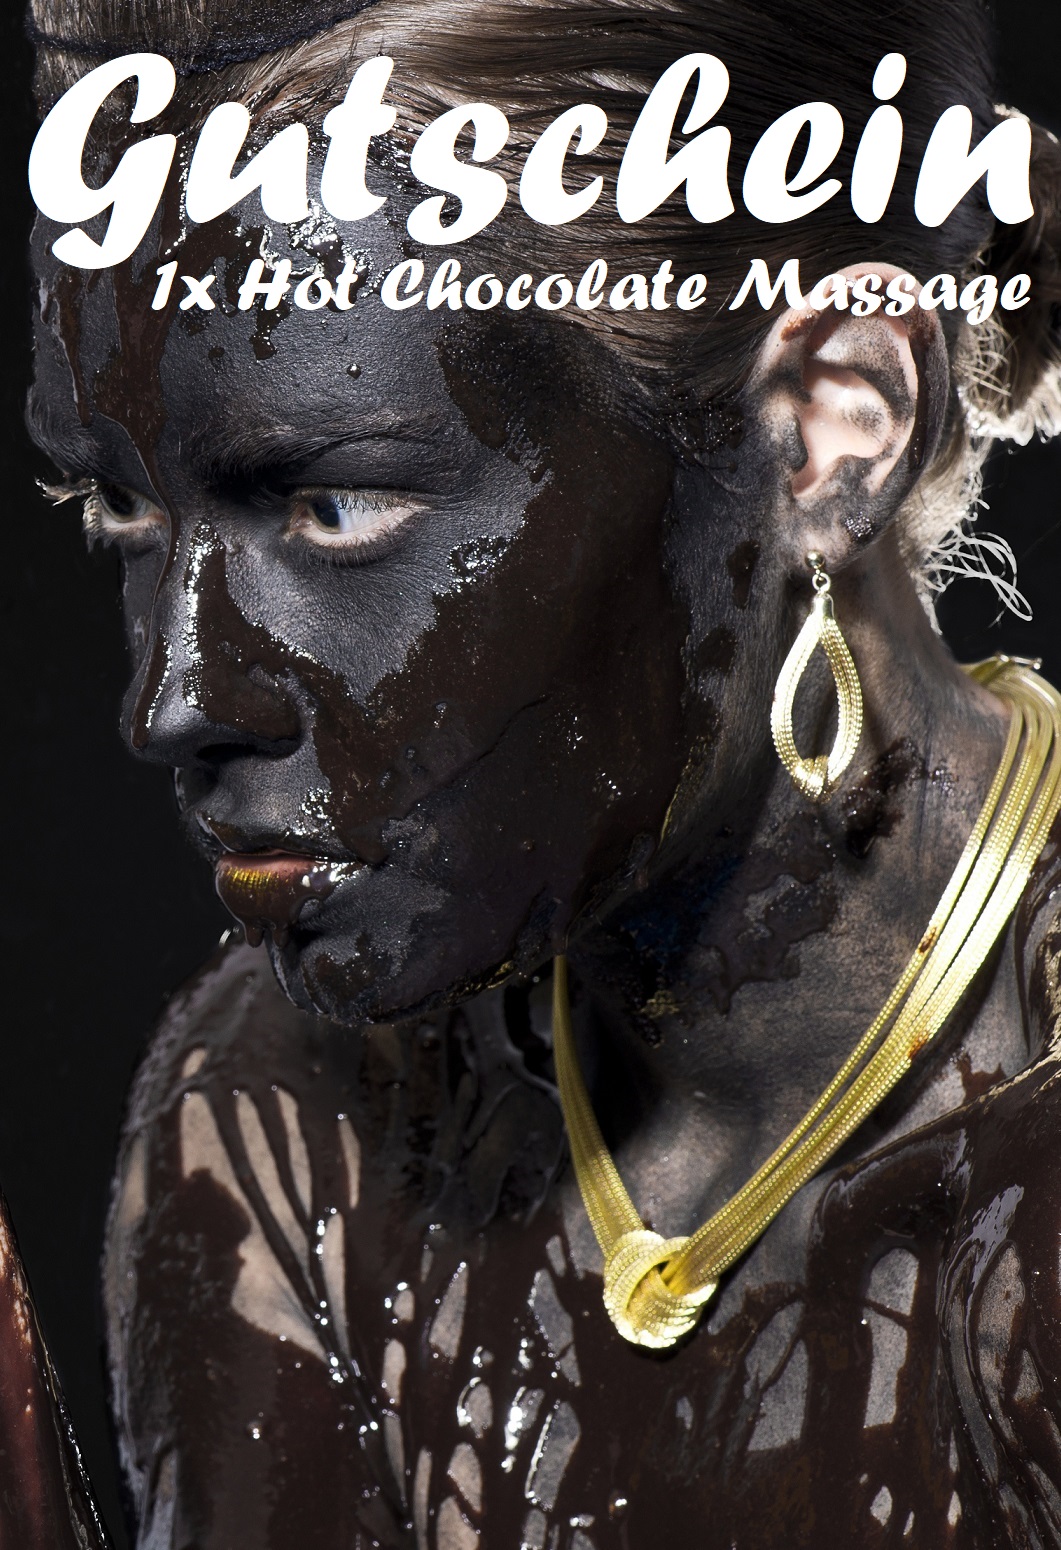 Gutscheinvorlage für Hot Chocolate Massagen